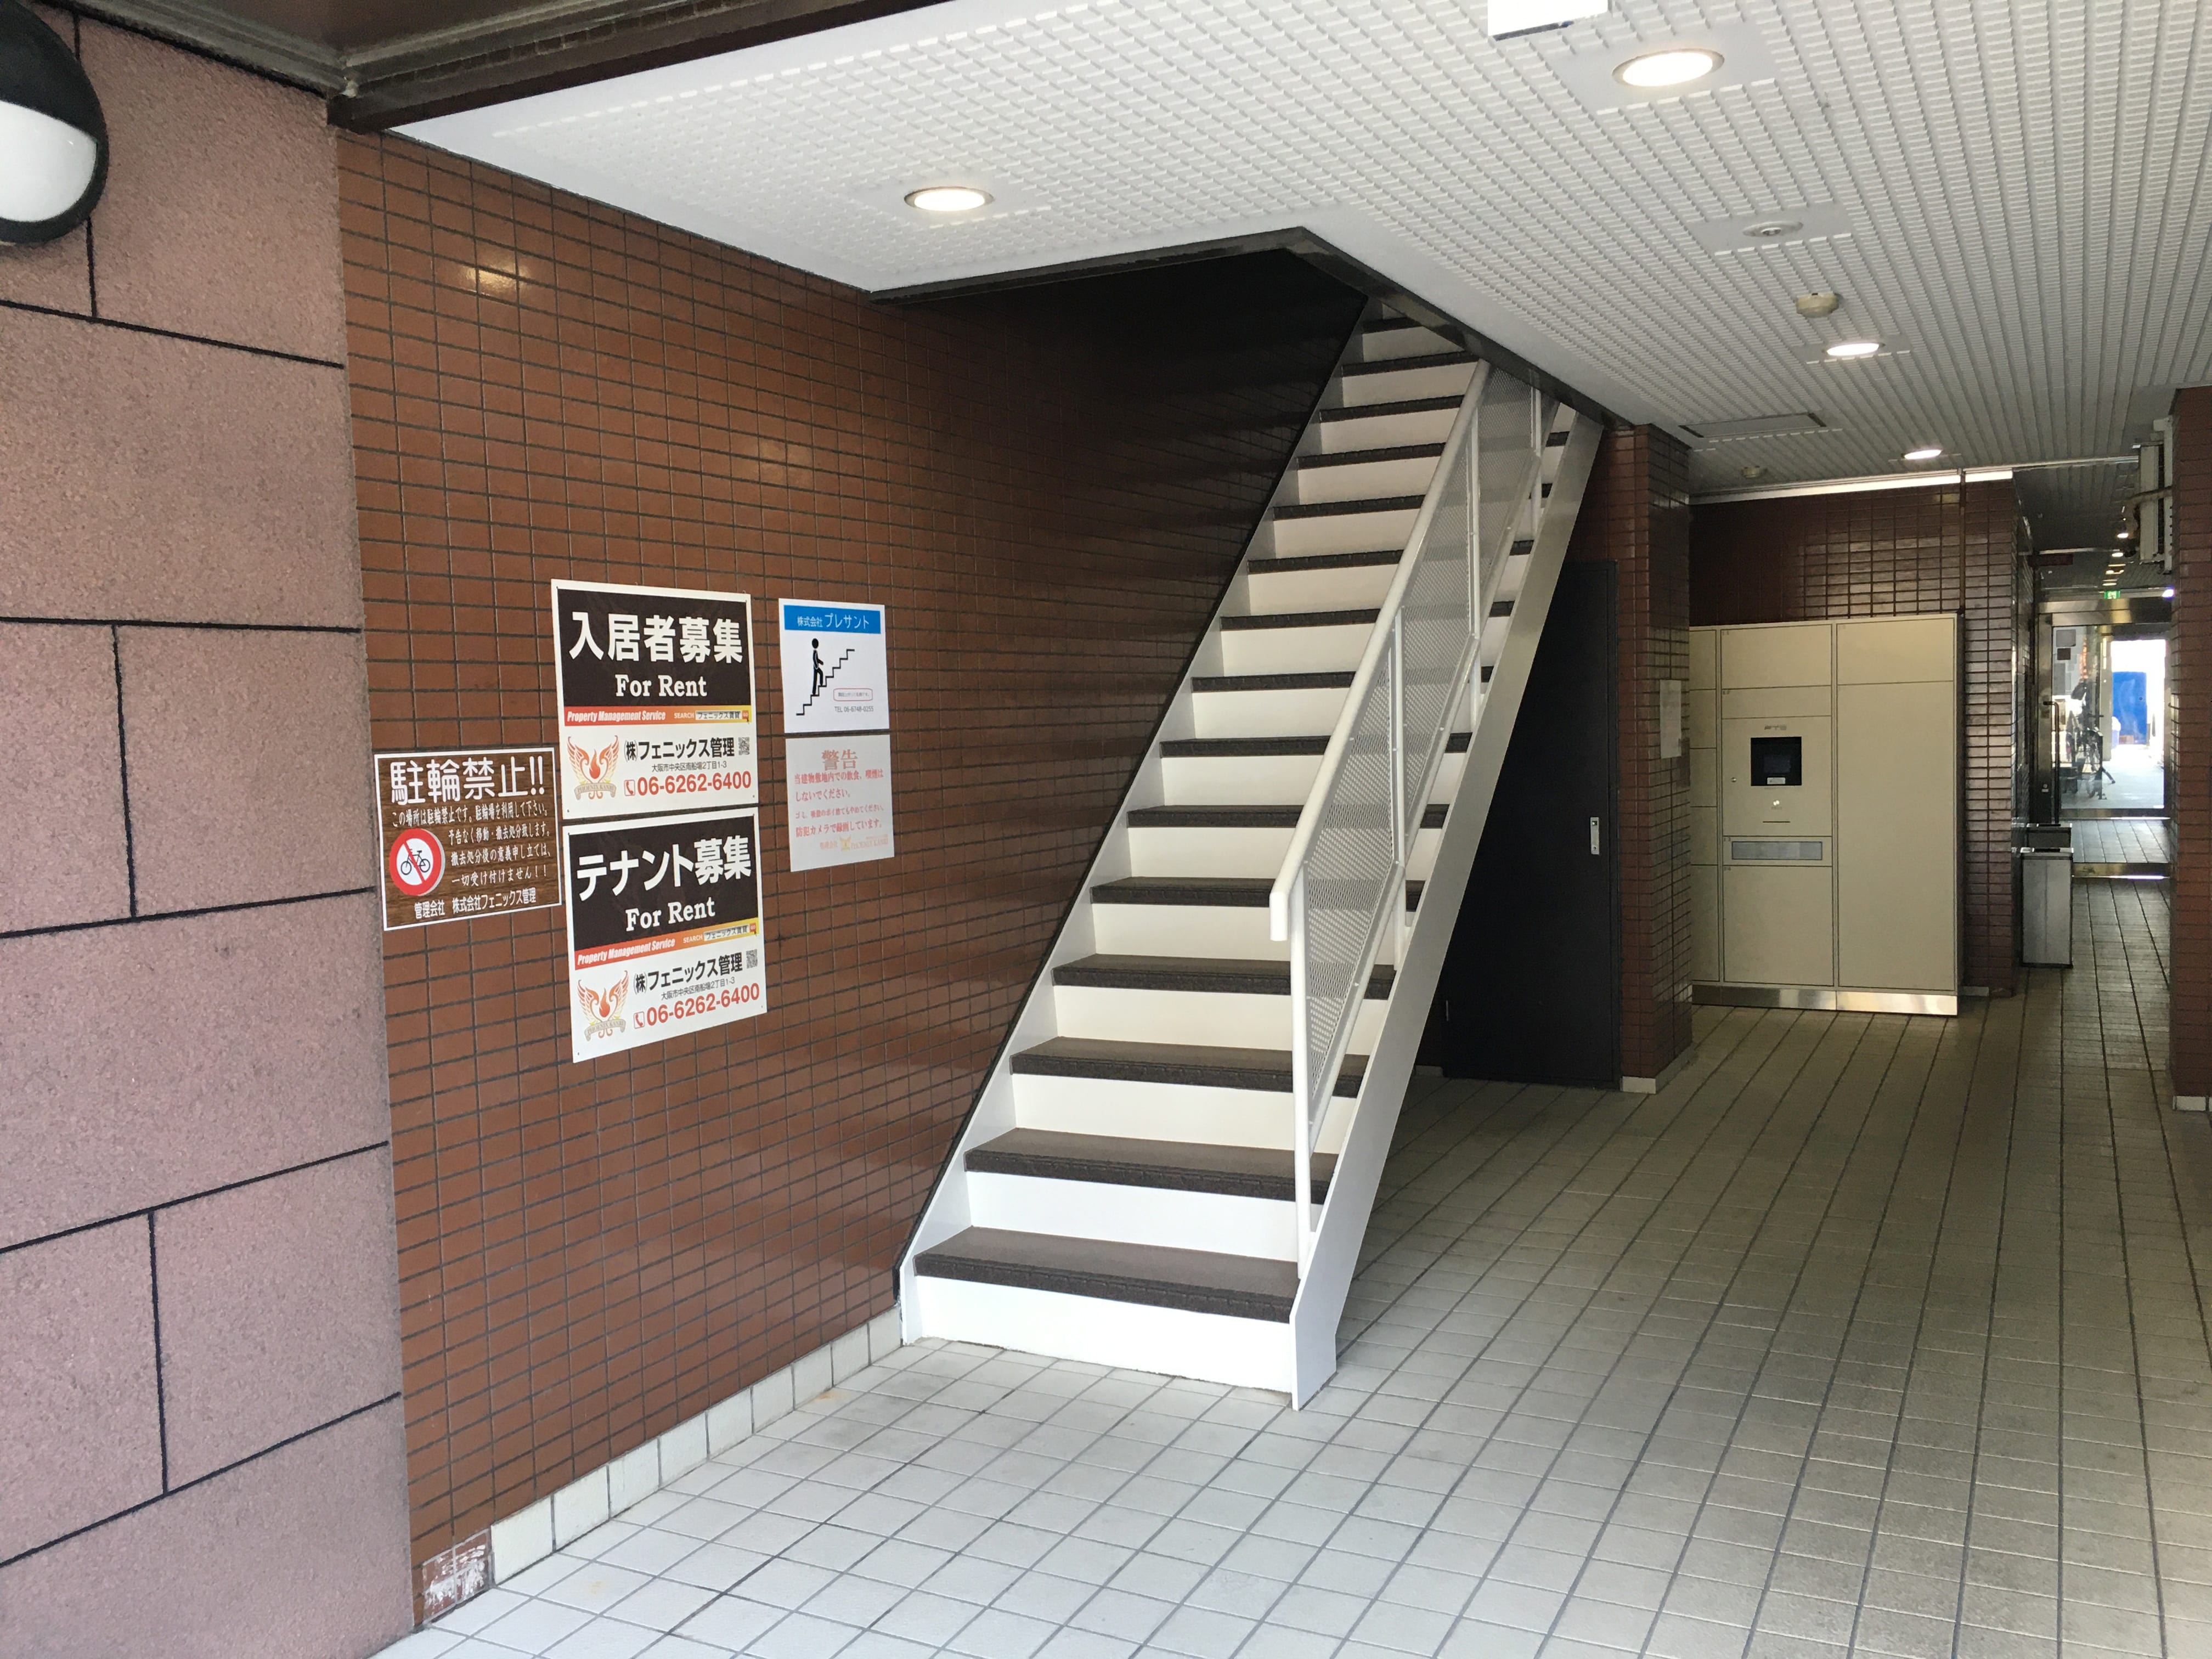 東大阪 近鉄けいはんな線長田駅1番出口出てすぐのやよい軒横の階段を昇ります